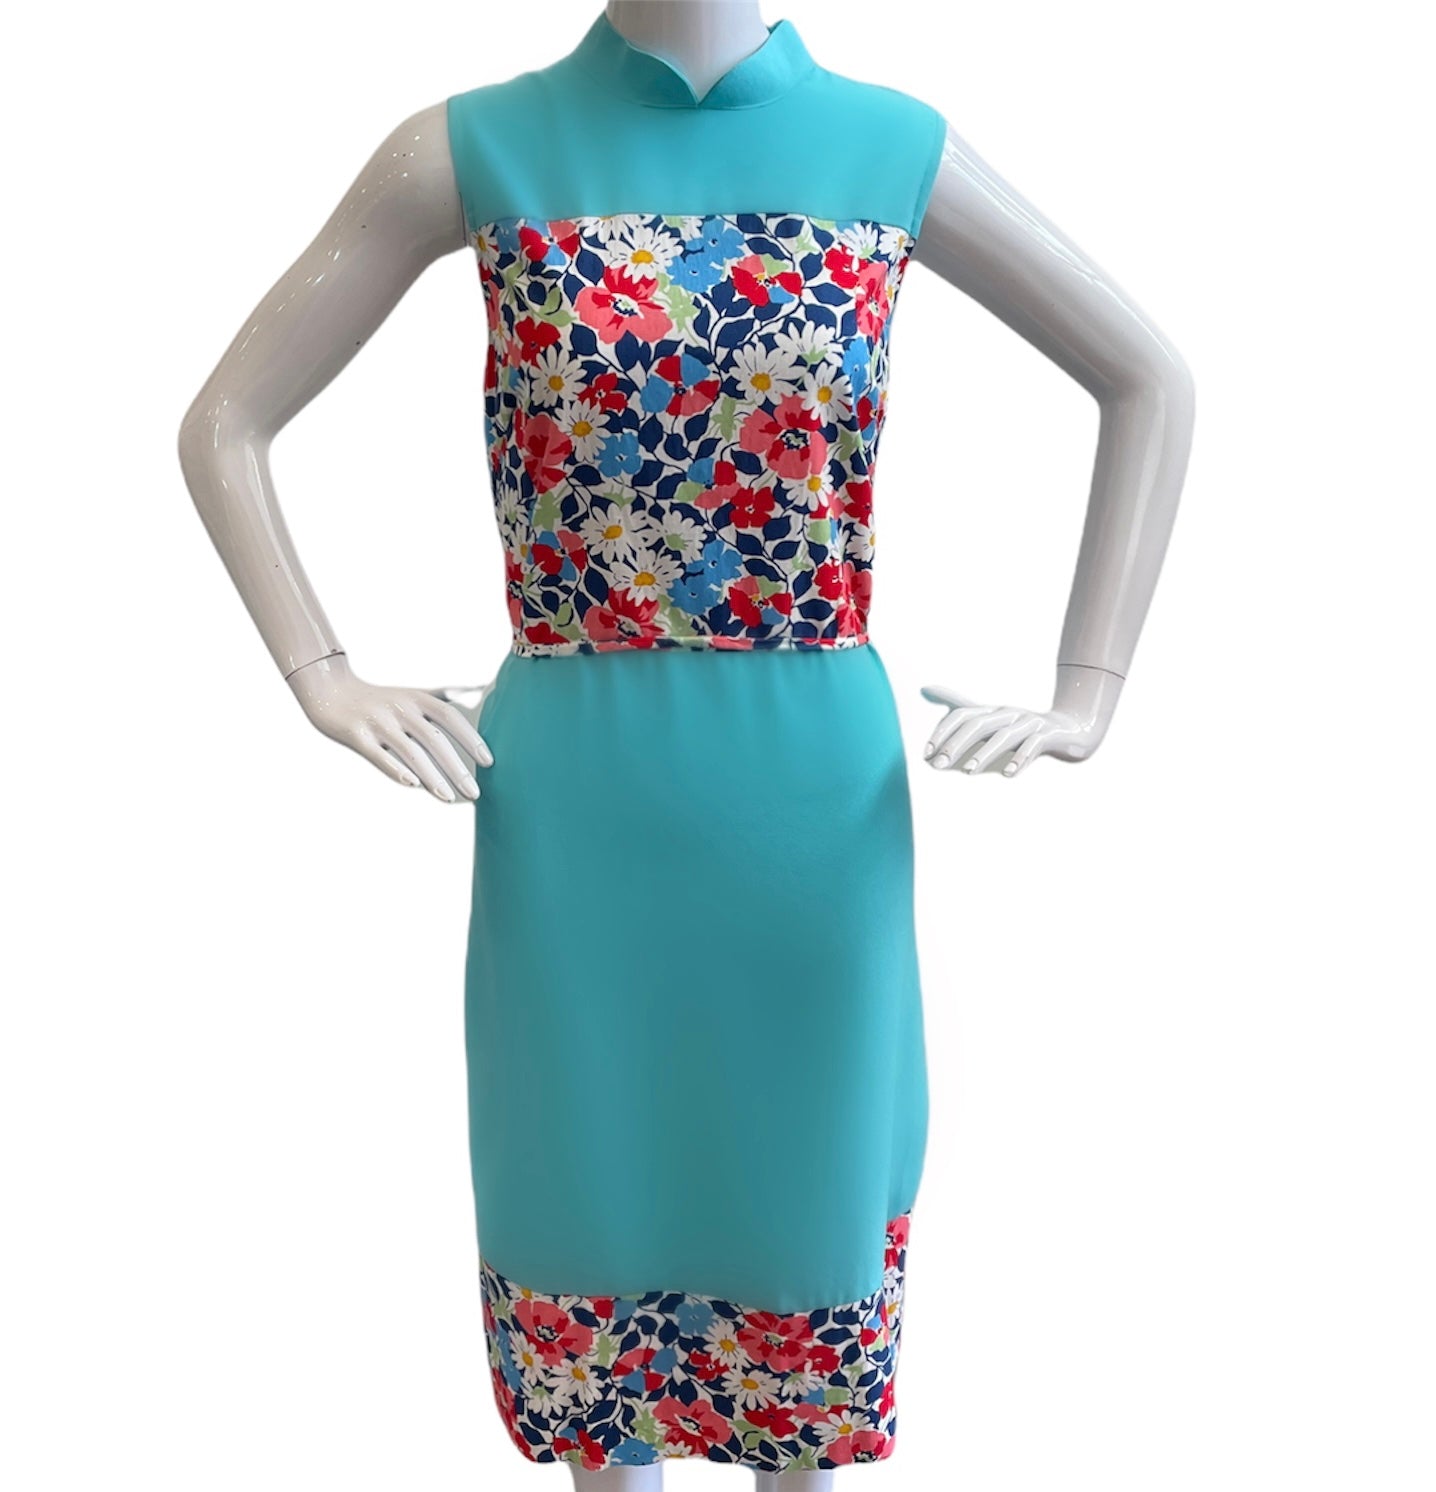 SUMMER FLORALS DRESS HANDMADE MODERN COTTON CHEONGSAM - BABY PINK/ CRANBERRY RED/ LILAC PURPLE/ AQUA BLUE